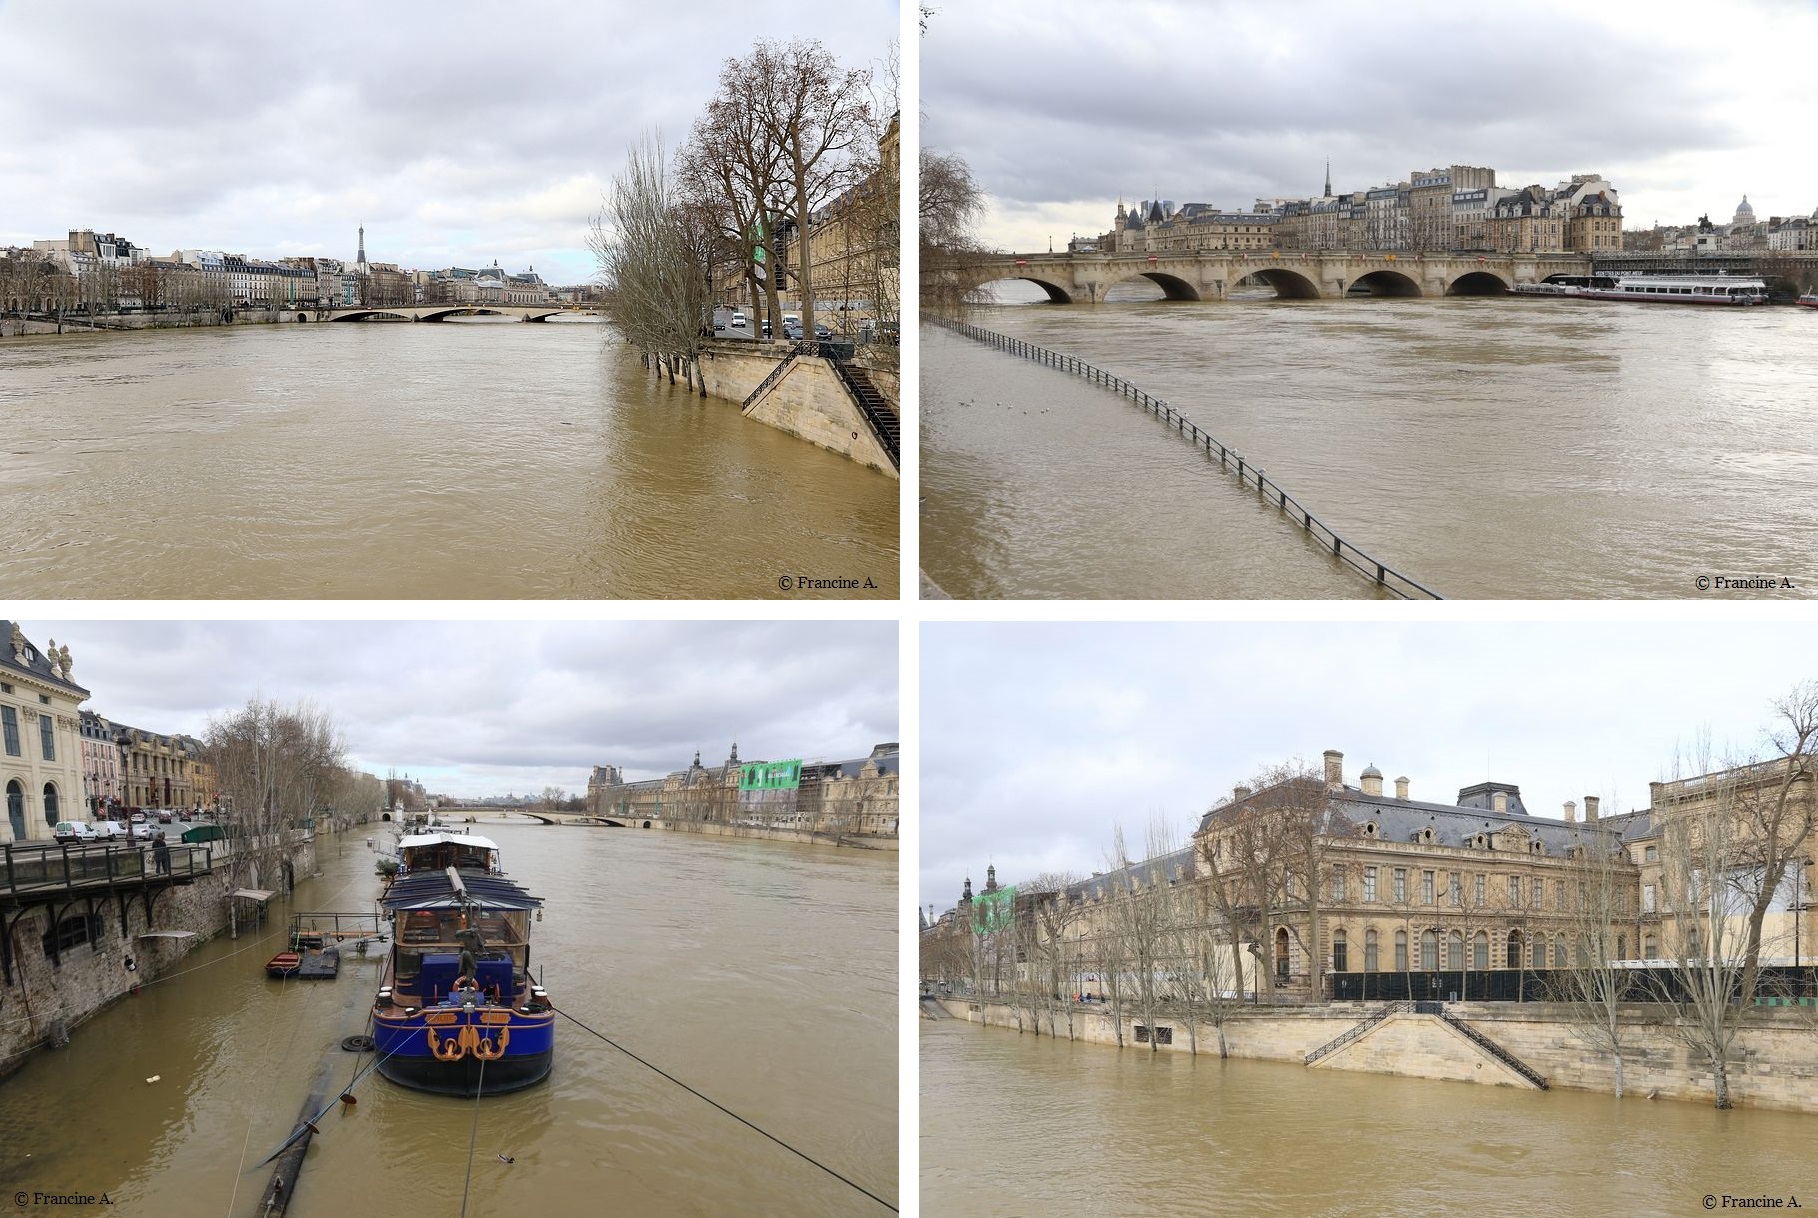 La Seine en crue à Paris - février 2021 - Blog Paris Autrement par Francine A.